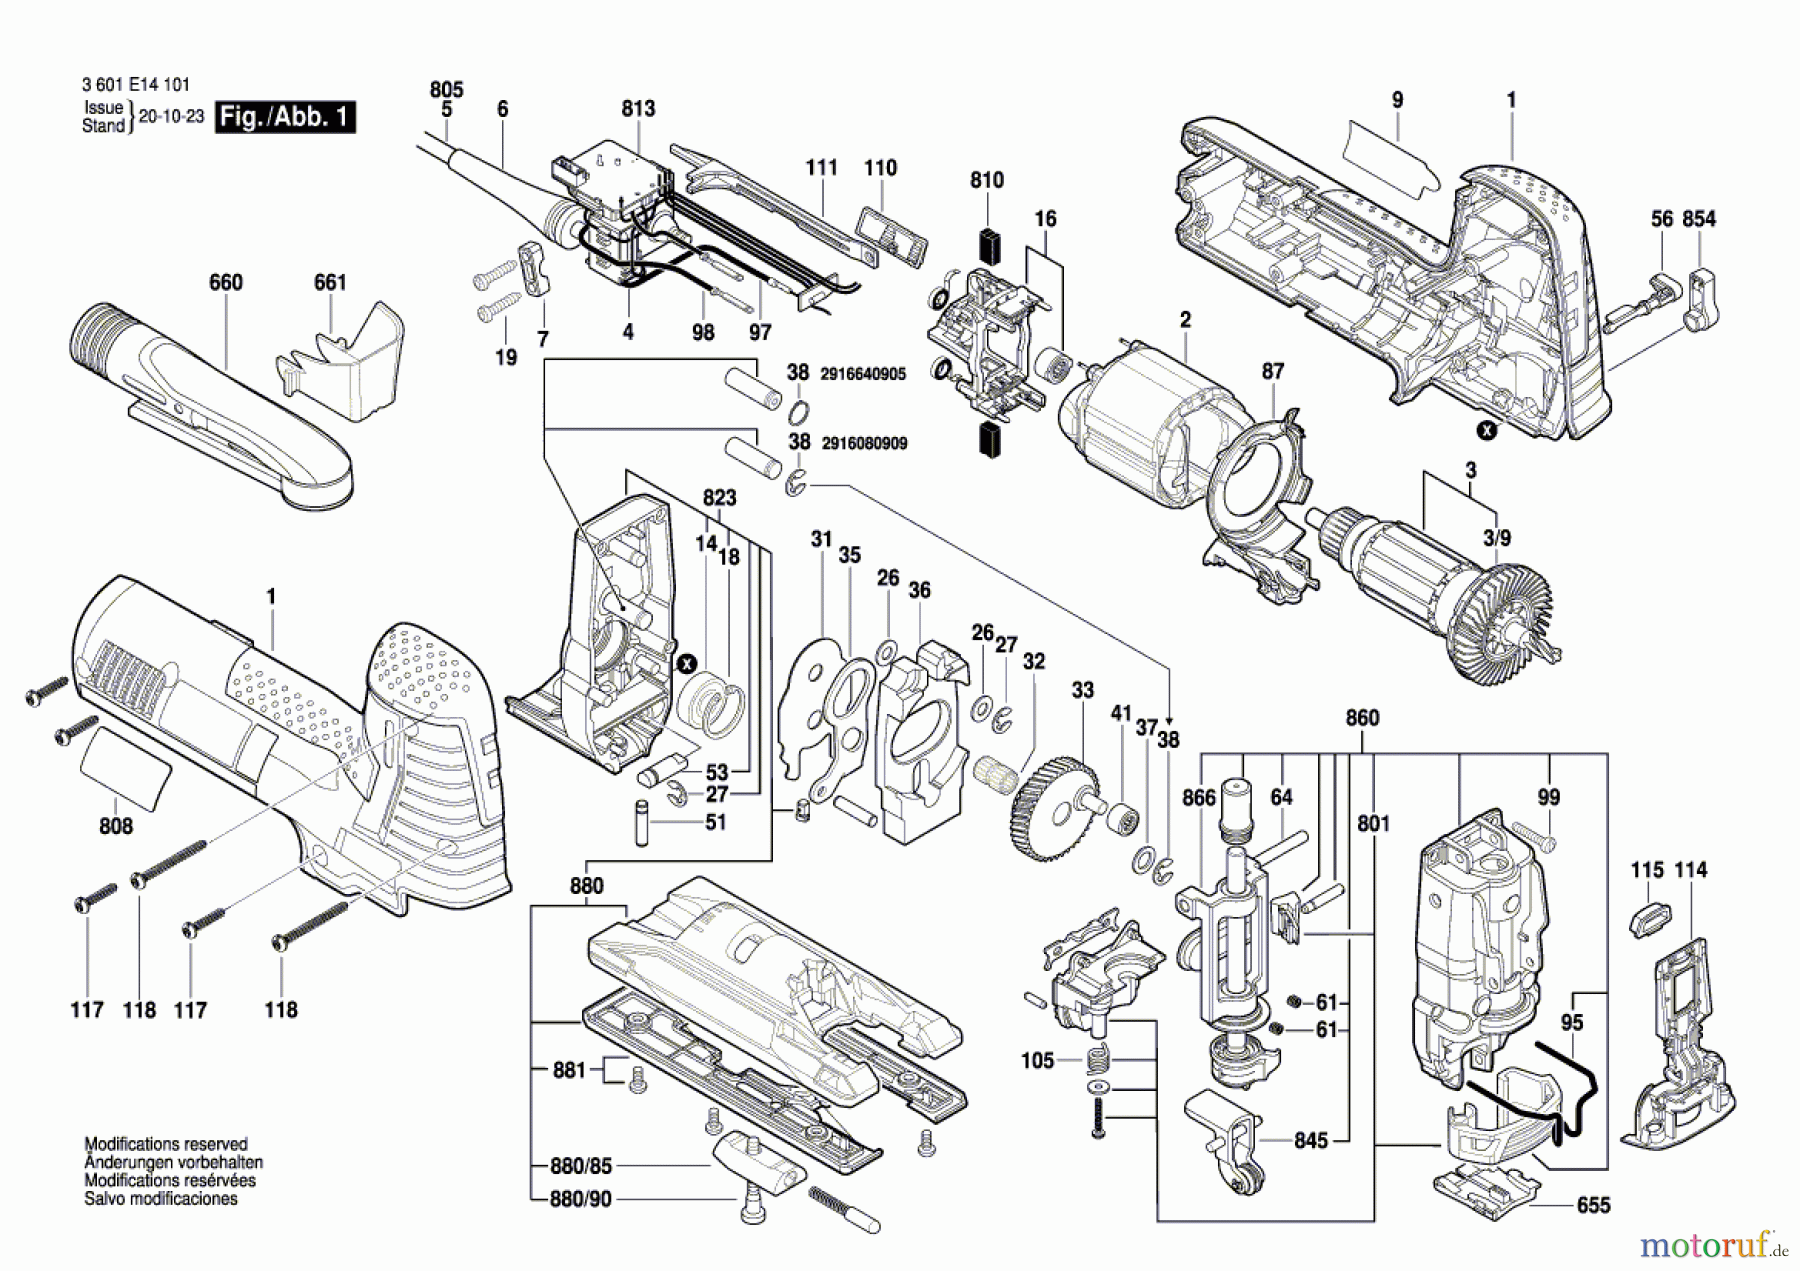  Bosch Werkzeug Pendelstichsäge GST 1400 CE Seite 1